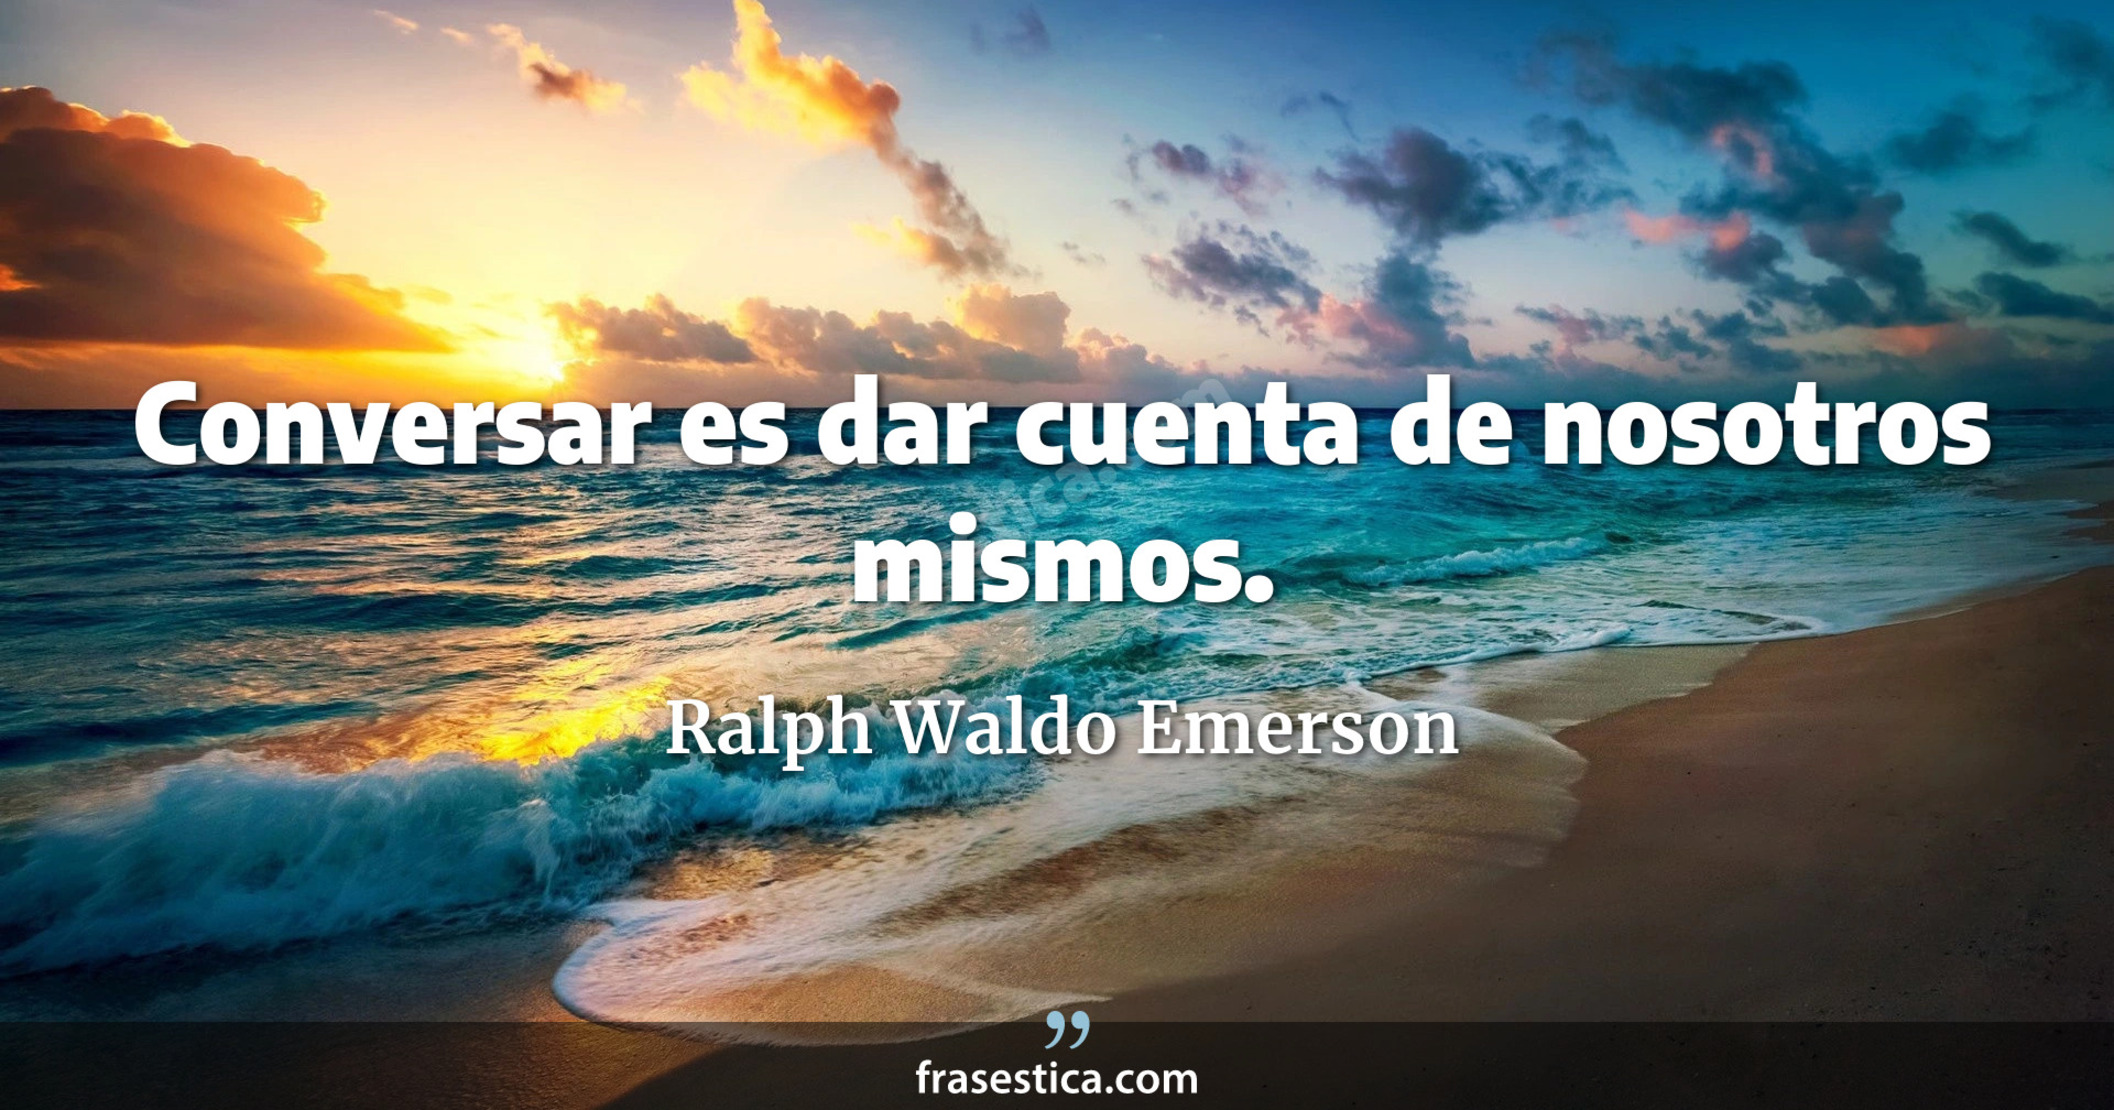 Conversar es dar cuenta de nosotros mismos. - Ralph Waldo Emerson